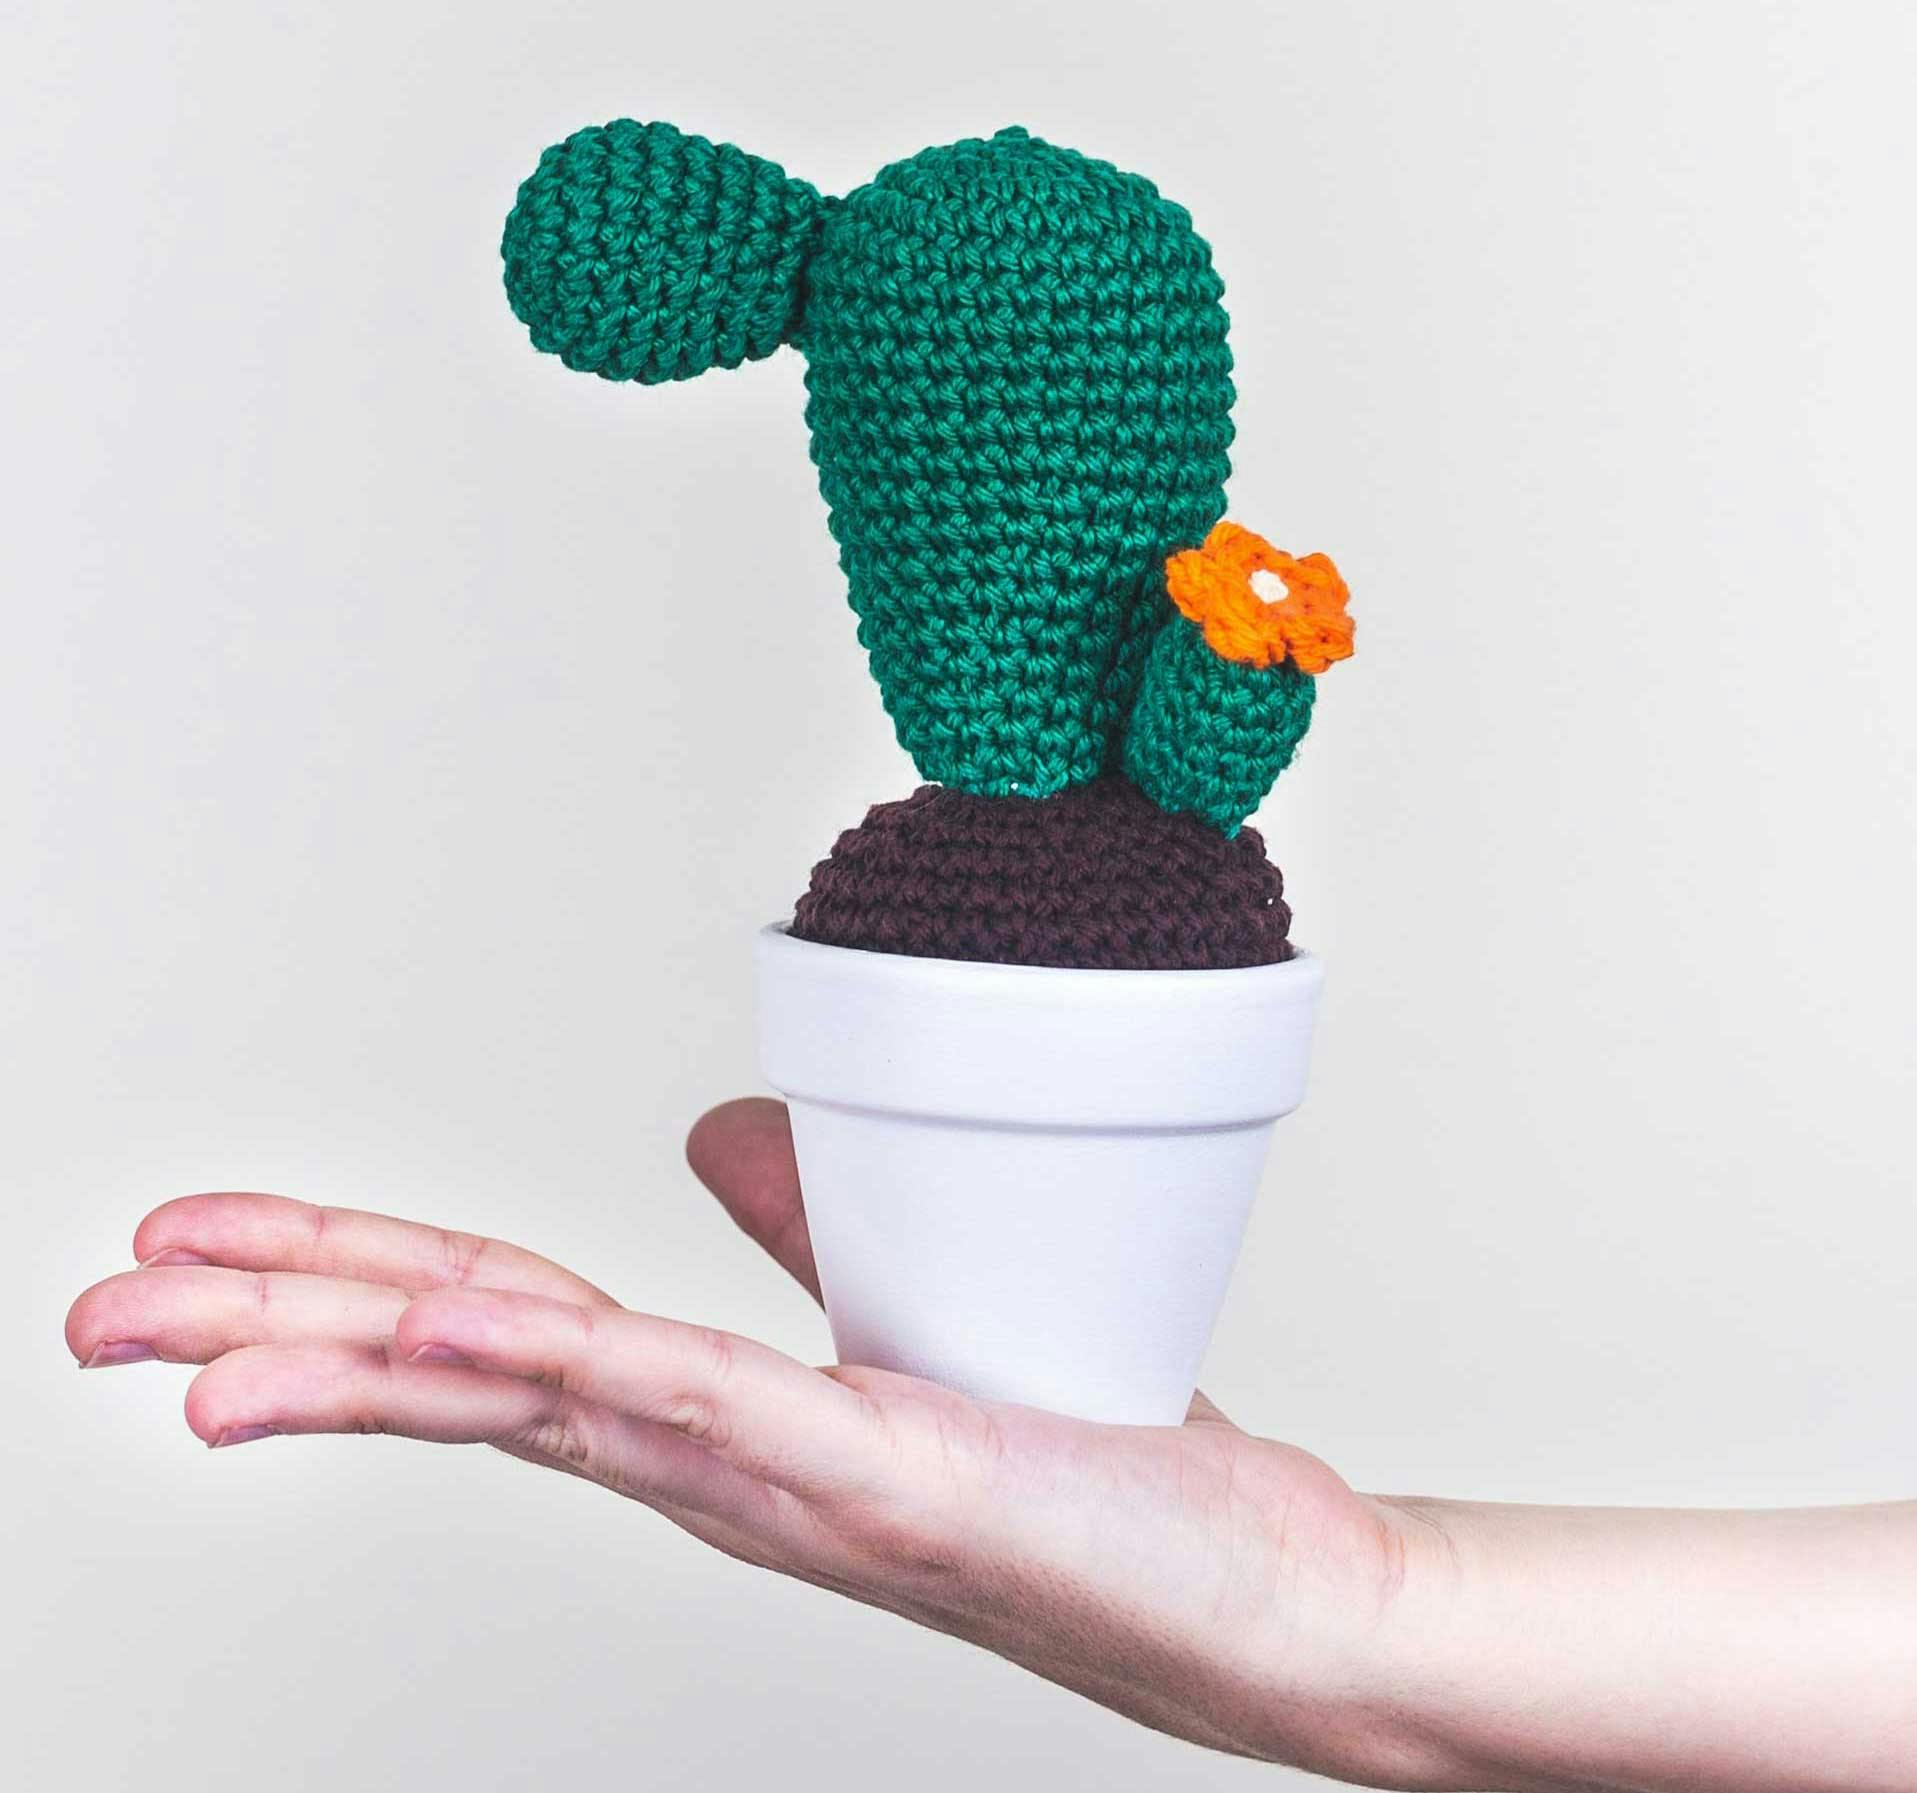  Groene, gehaakte cactus in een pot.